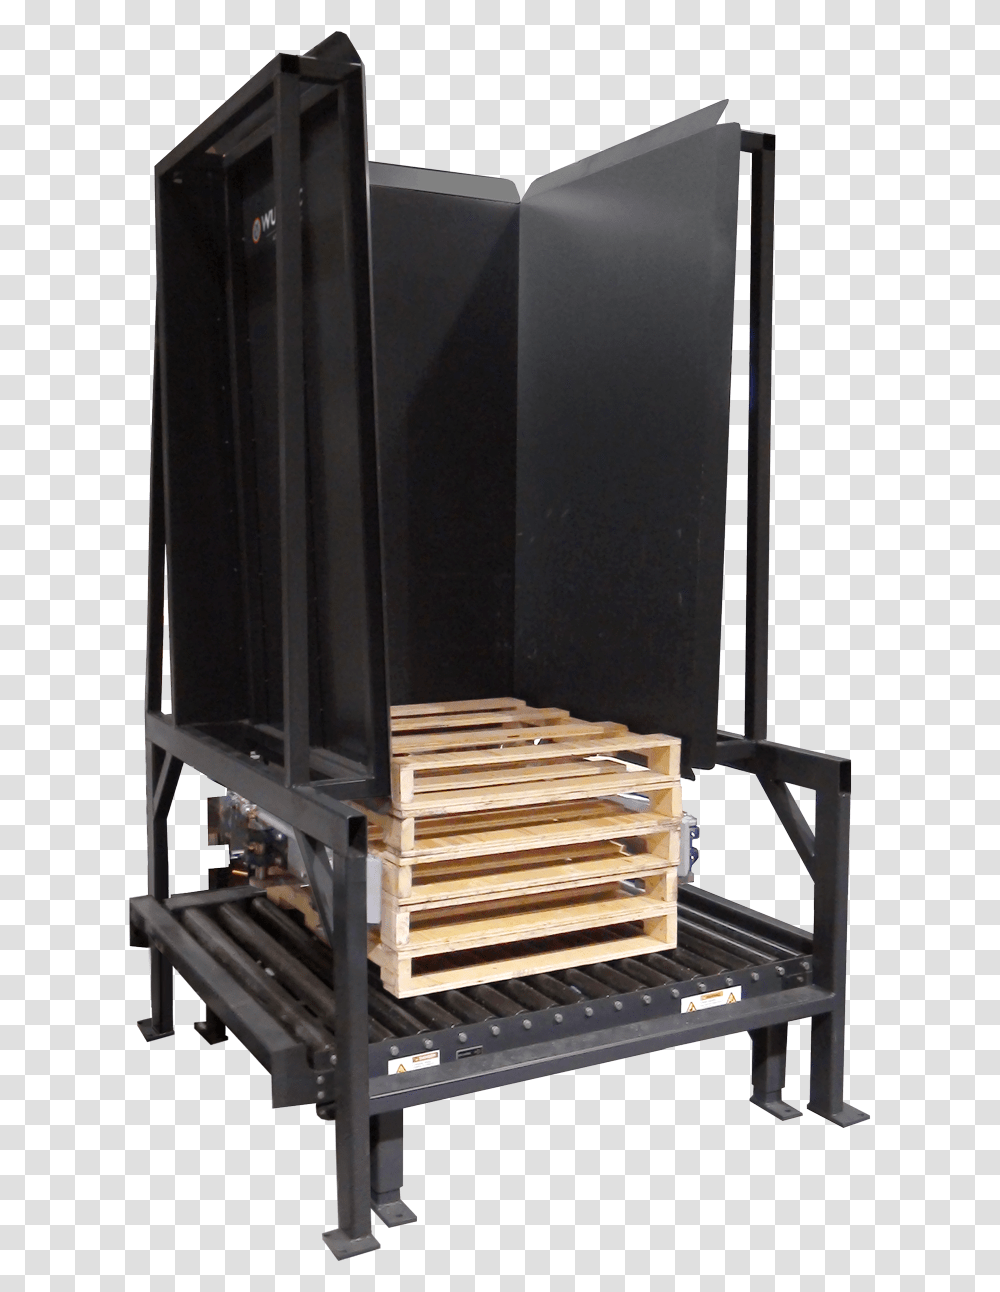 Pallet Dispenser Wulftec Pallet Dispenser, Furniture, Wood, Cabinet, Box Transparent Png